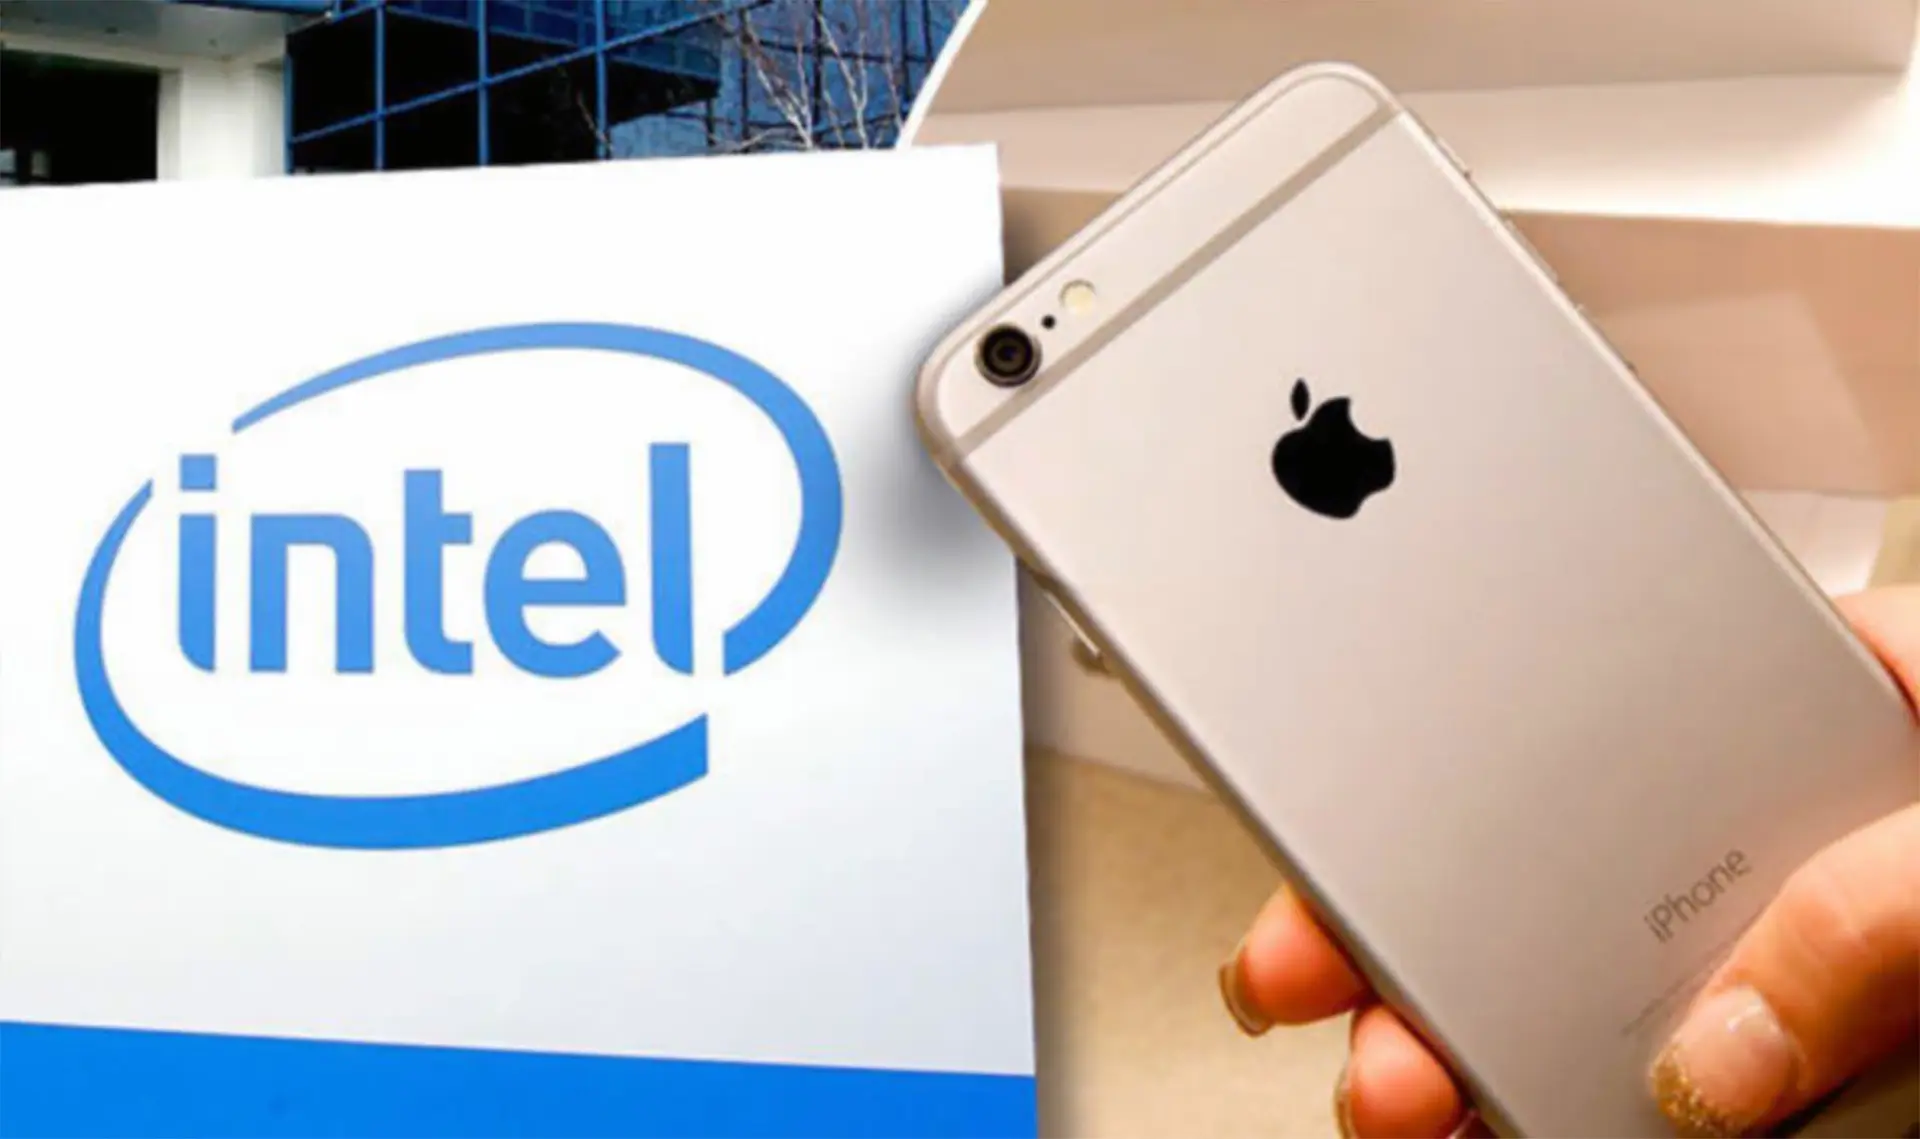 Apple compraría el negocio de módems de Intel por 1,000 millones de dólares